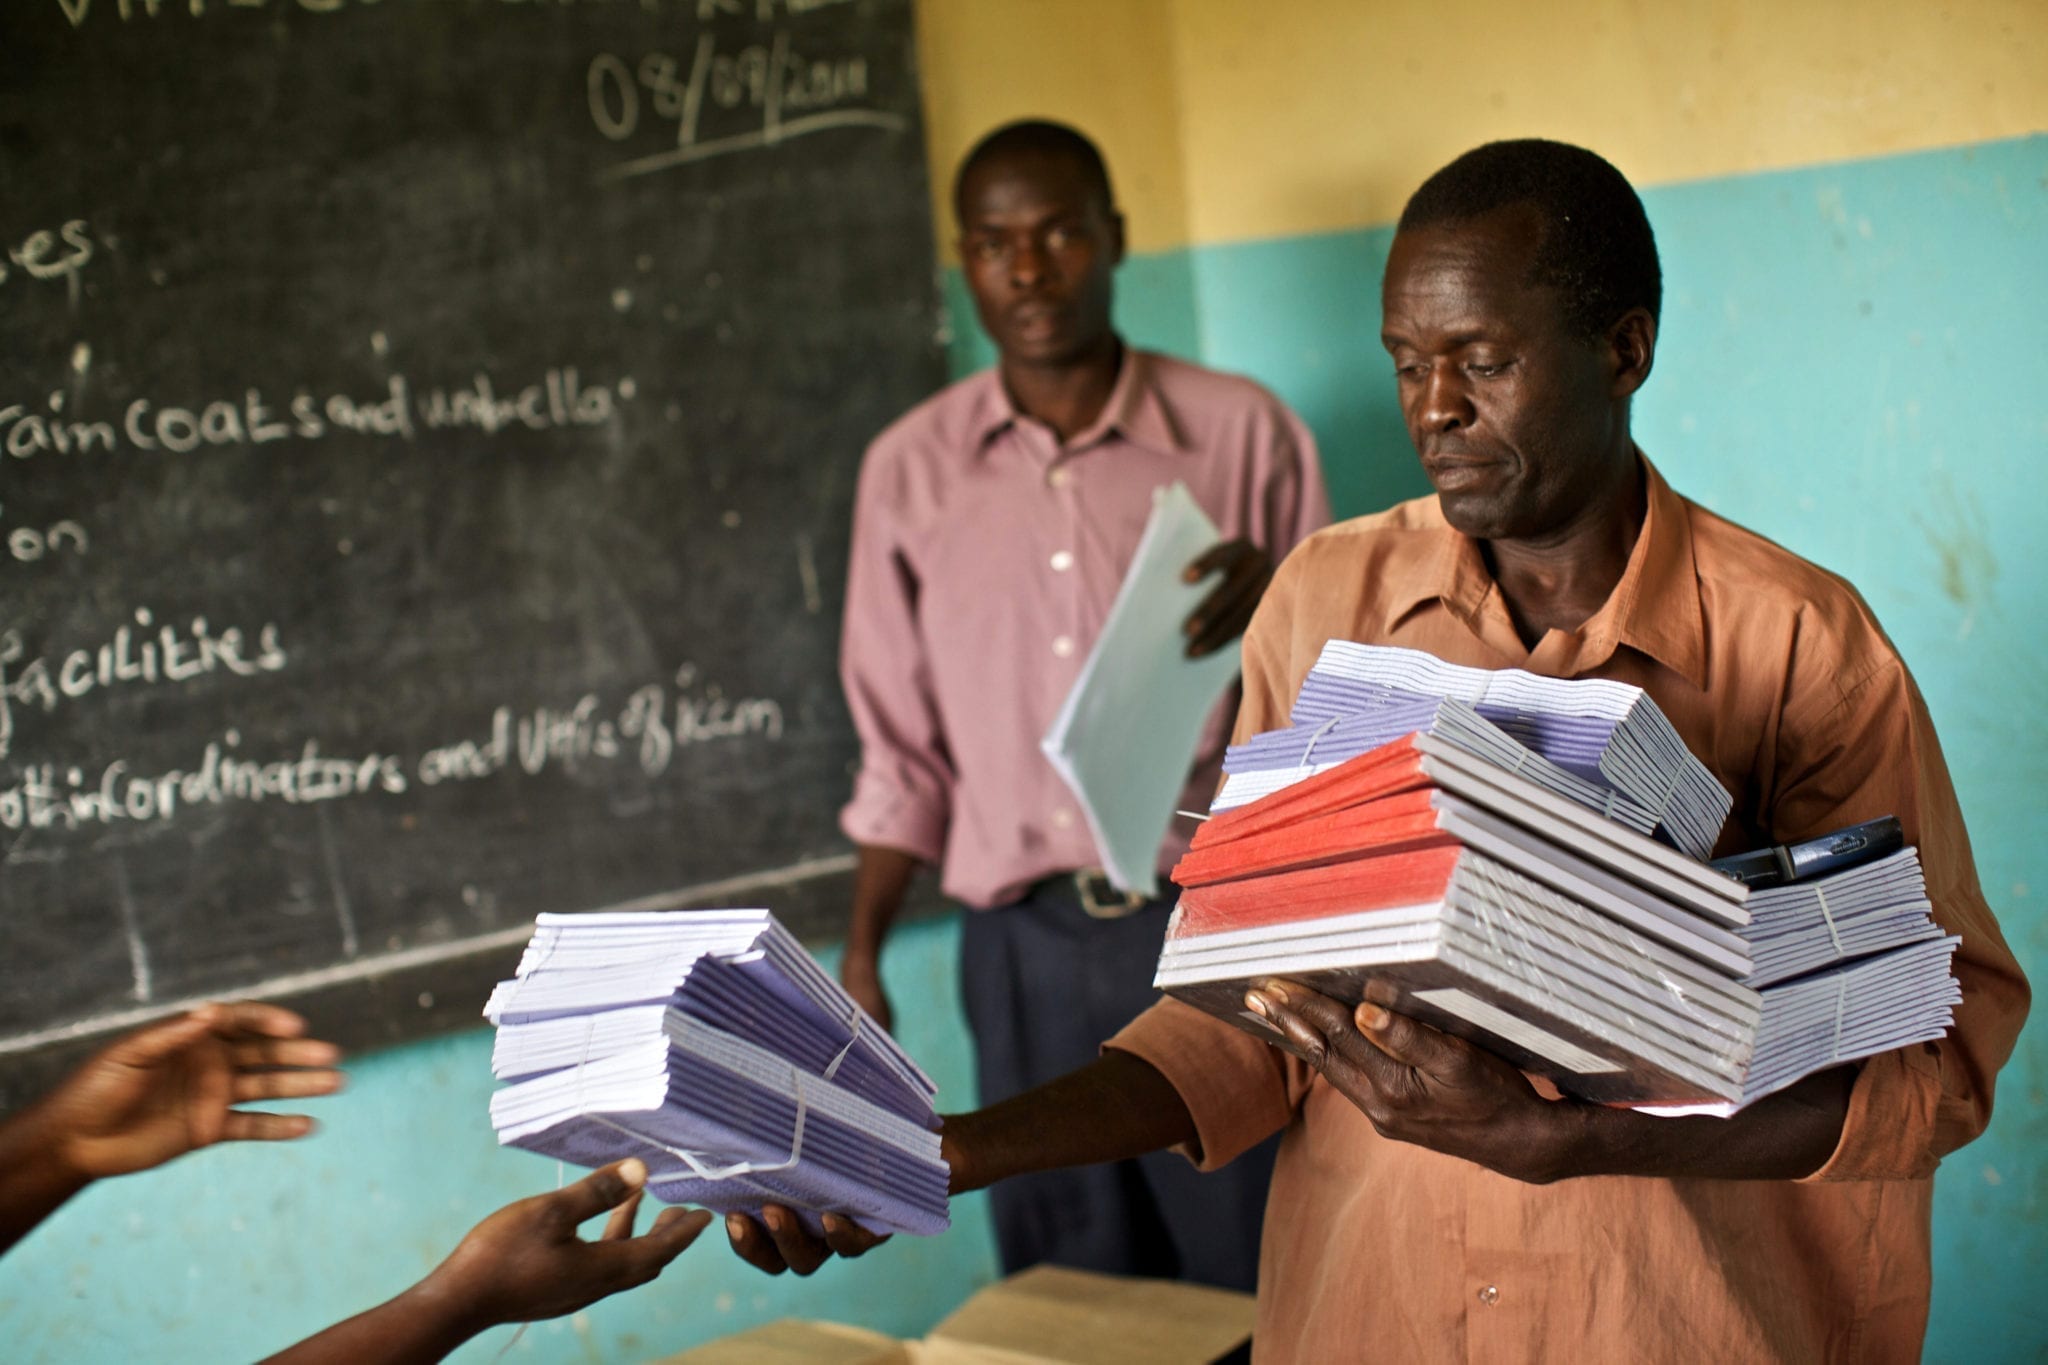 Two men distribute scholastic materials in Uganda.